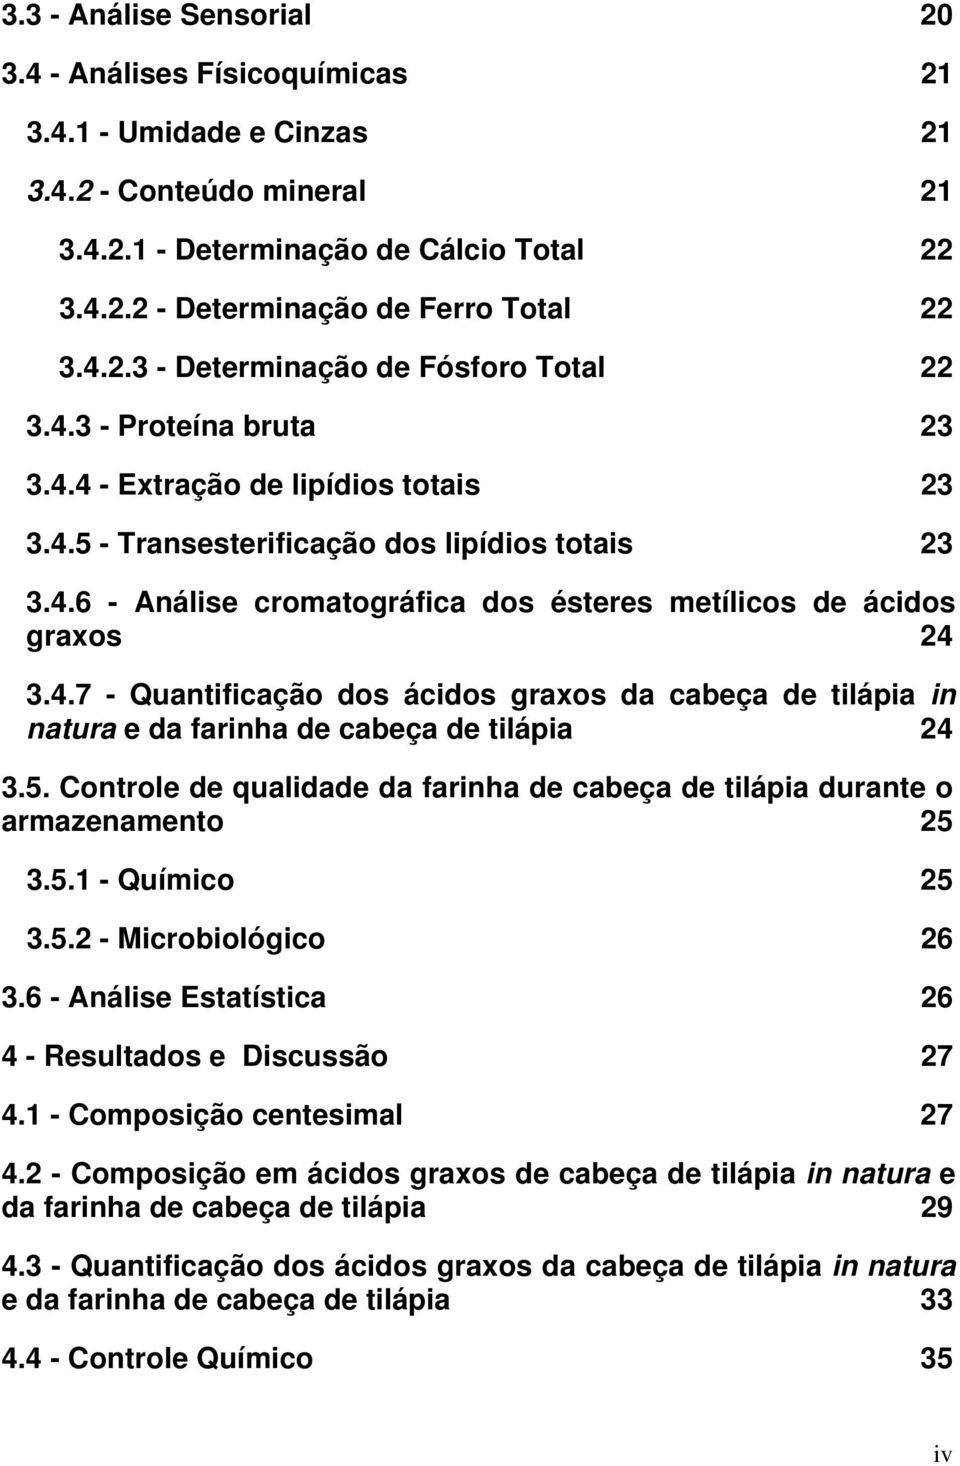 4.7 - Quantificação dos ácidos graxos da cabeça de tilápia in natura e da farinha de cabeça de tilápia 24 3.5. Controle de qualidade da farinha de cabeça de tilápia durante o armazenamento 25 3.5.1 - Químico 25 3.